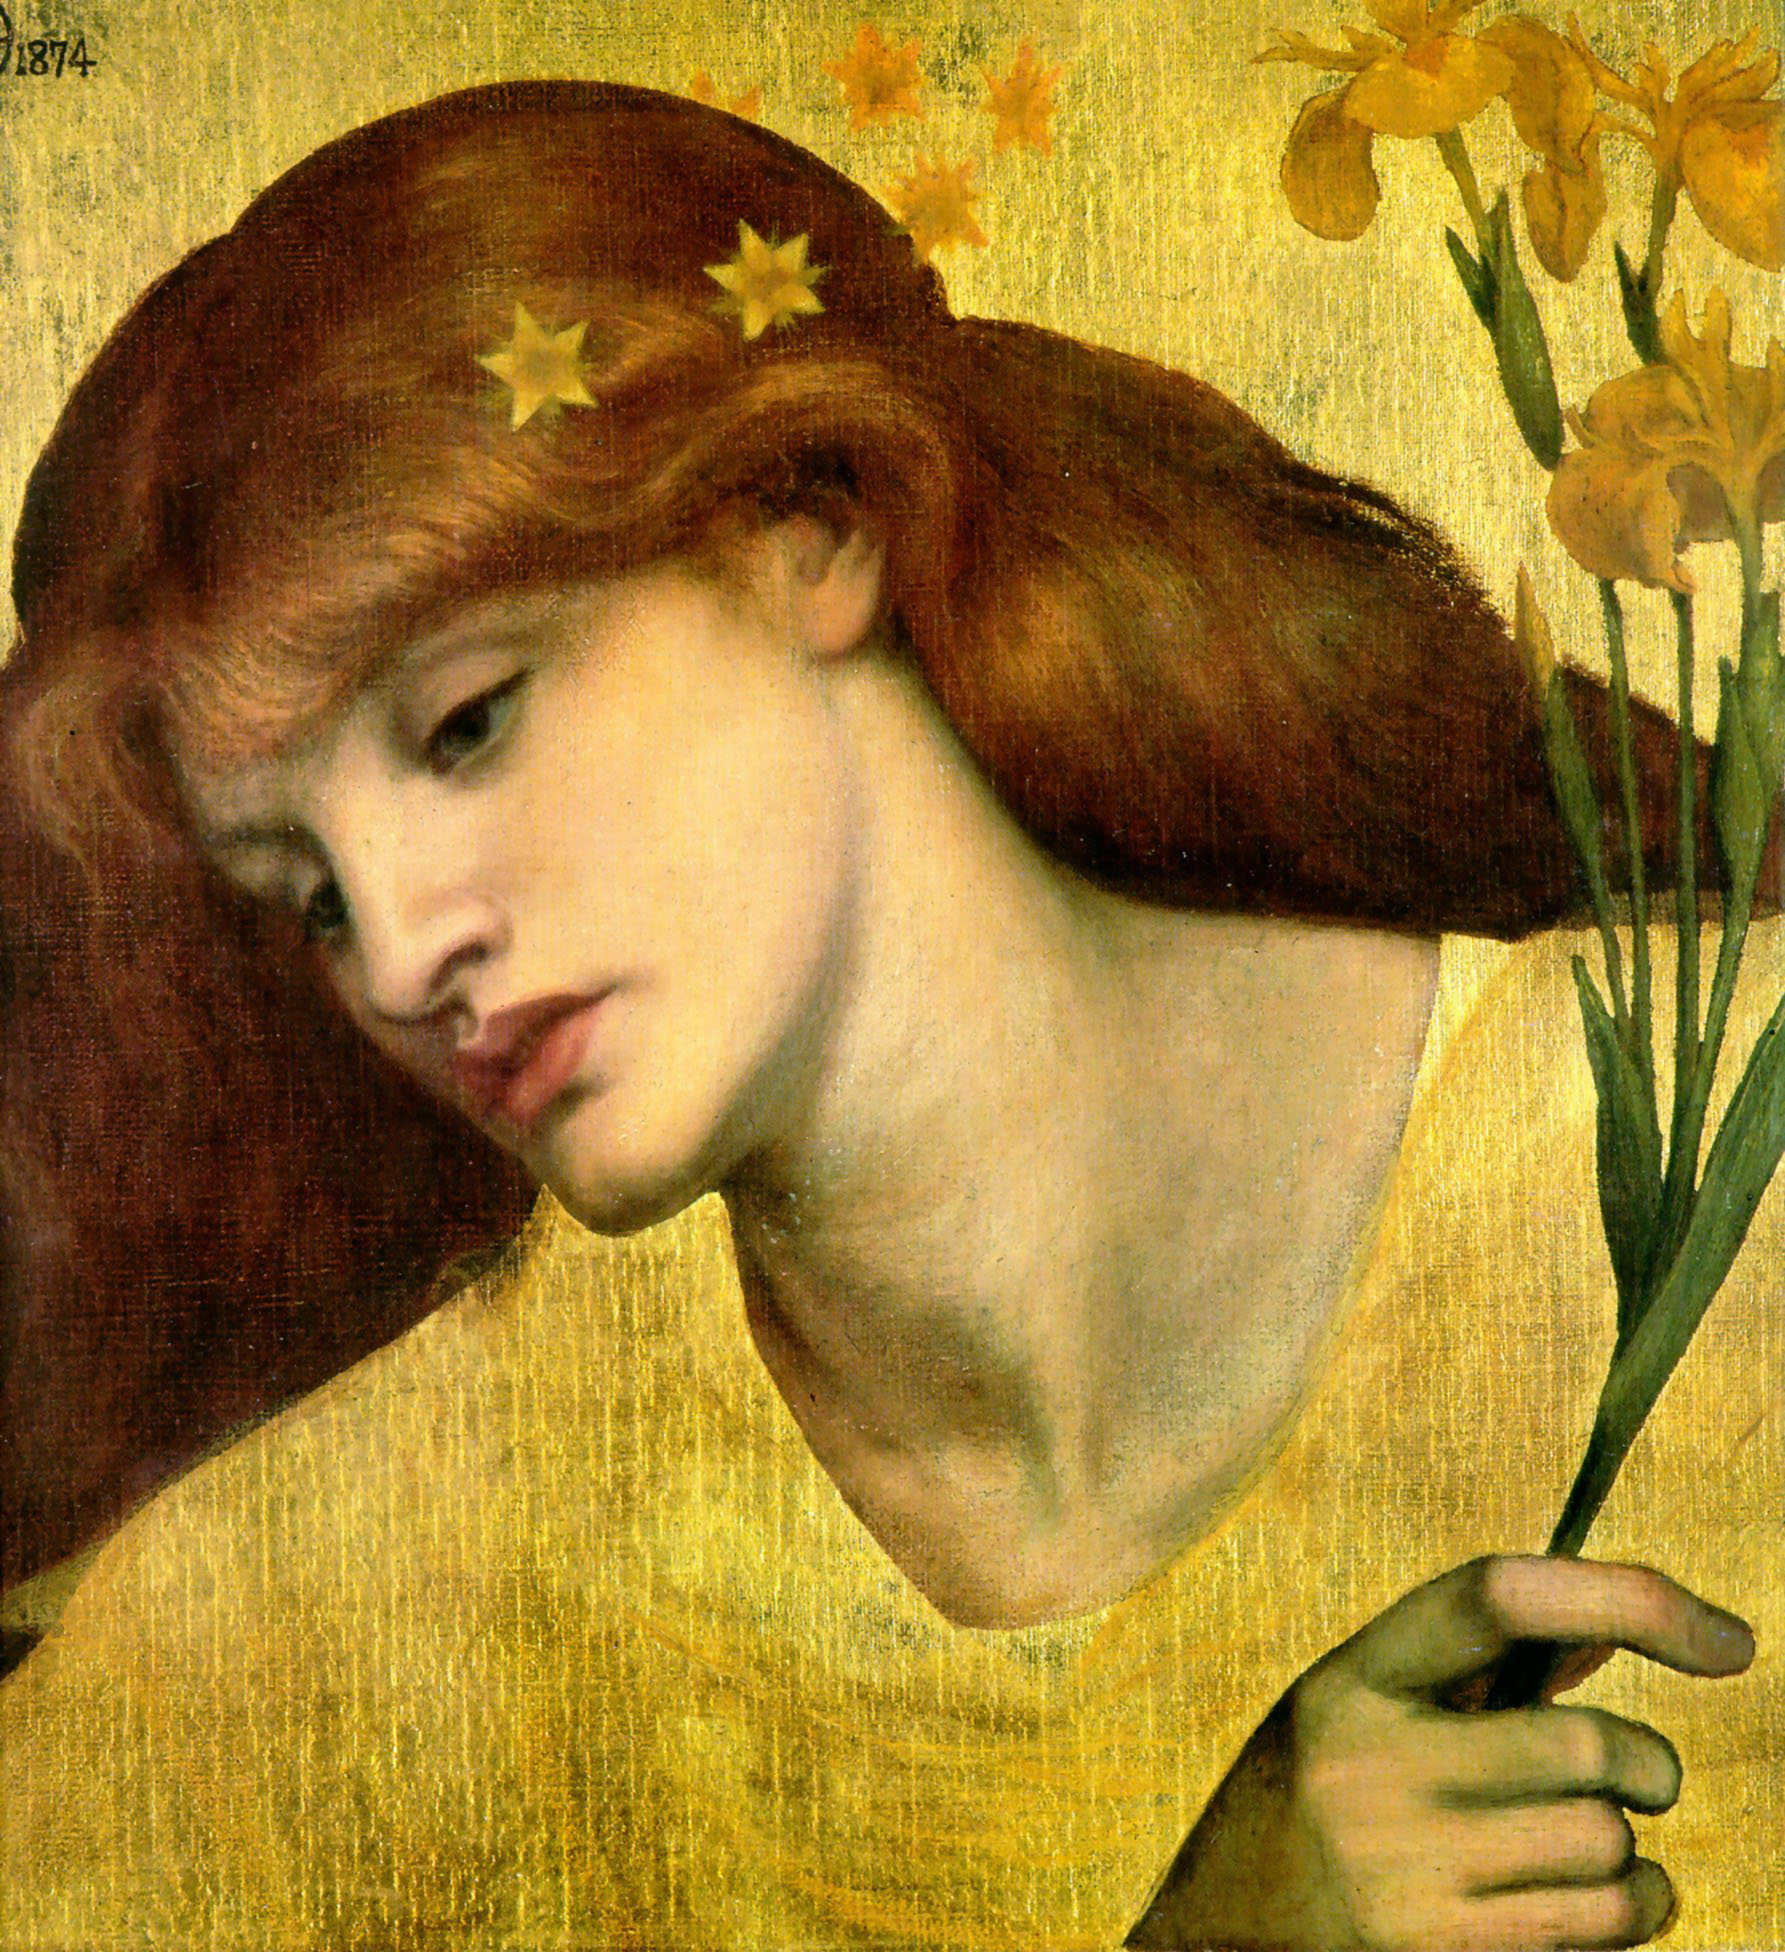 Szent Lilias by Dante Gabriel Rossetti - 1874 - 19 x 18 in 